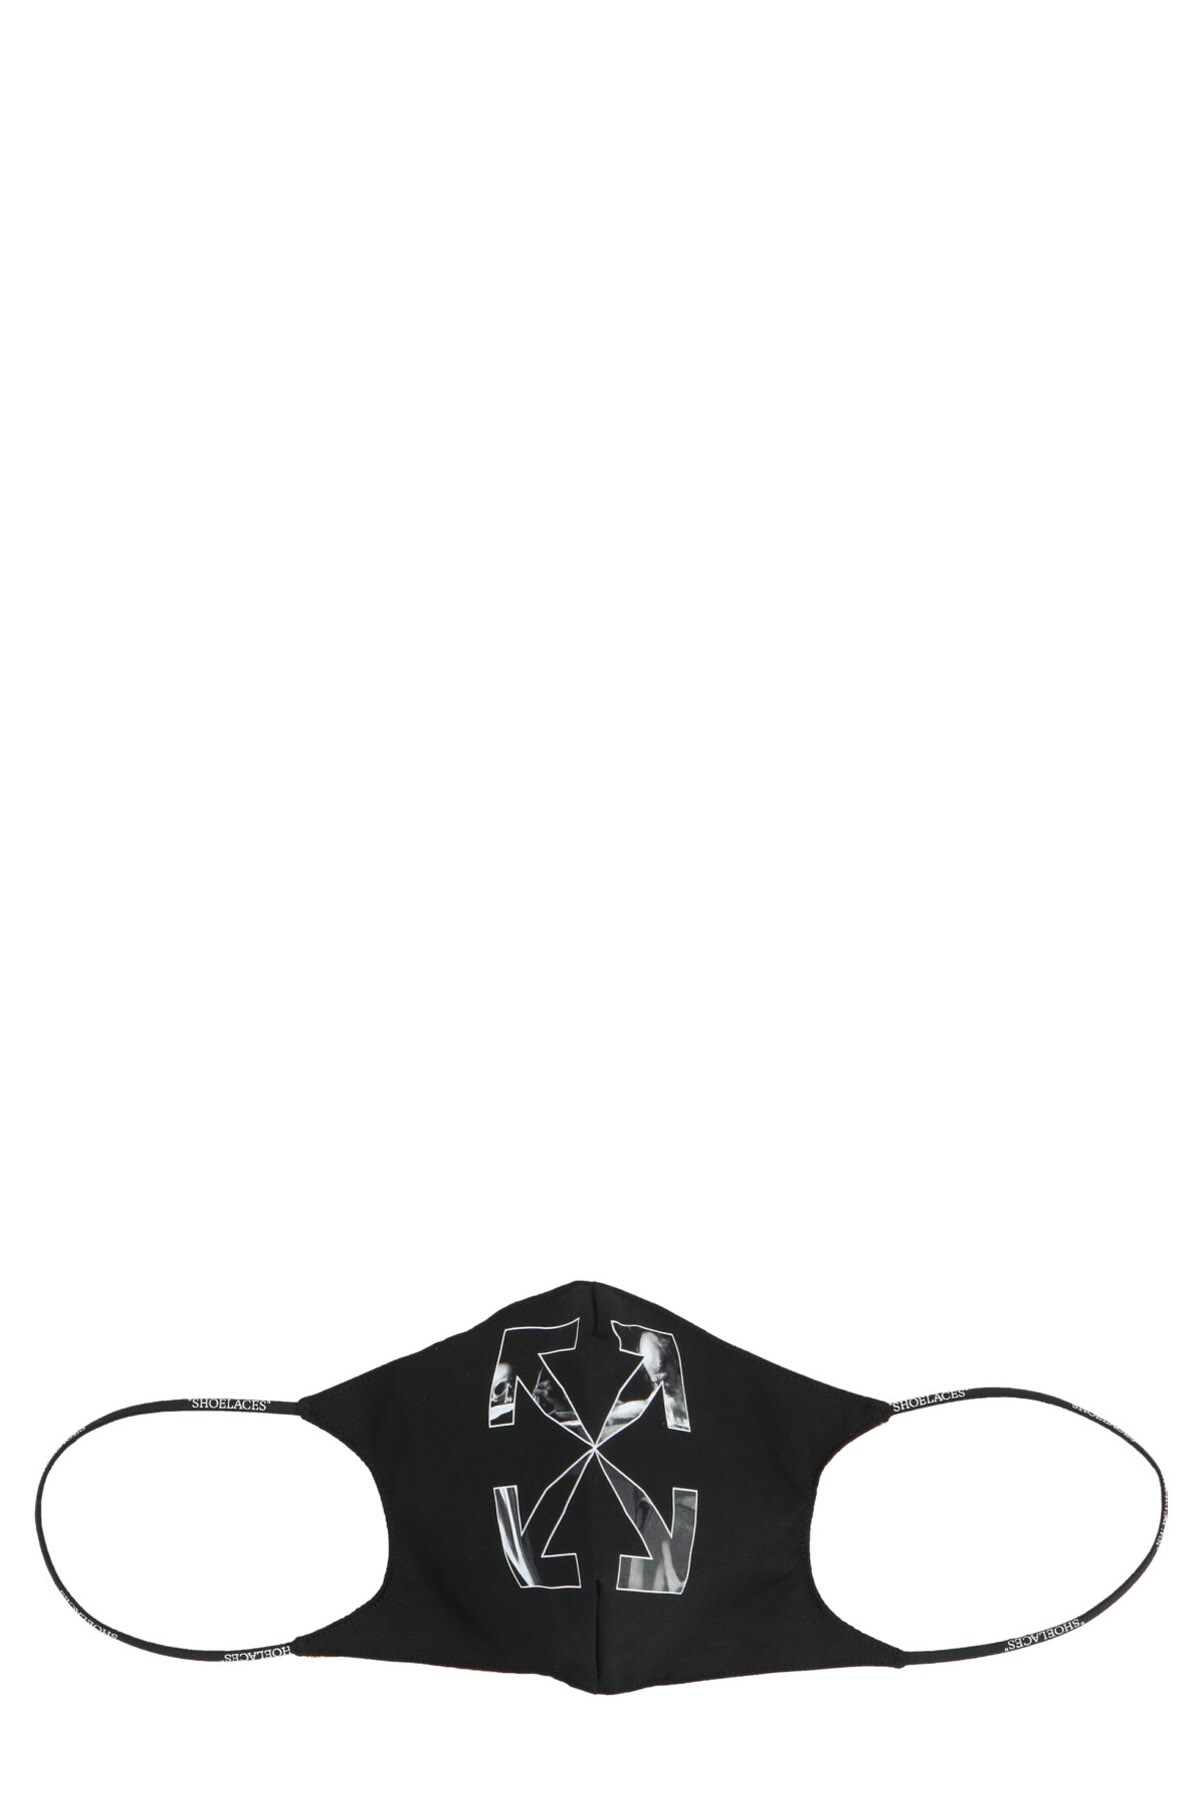 OFF-WHITE 'Caravaggio Arrow' Mask